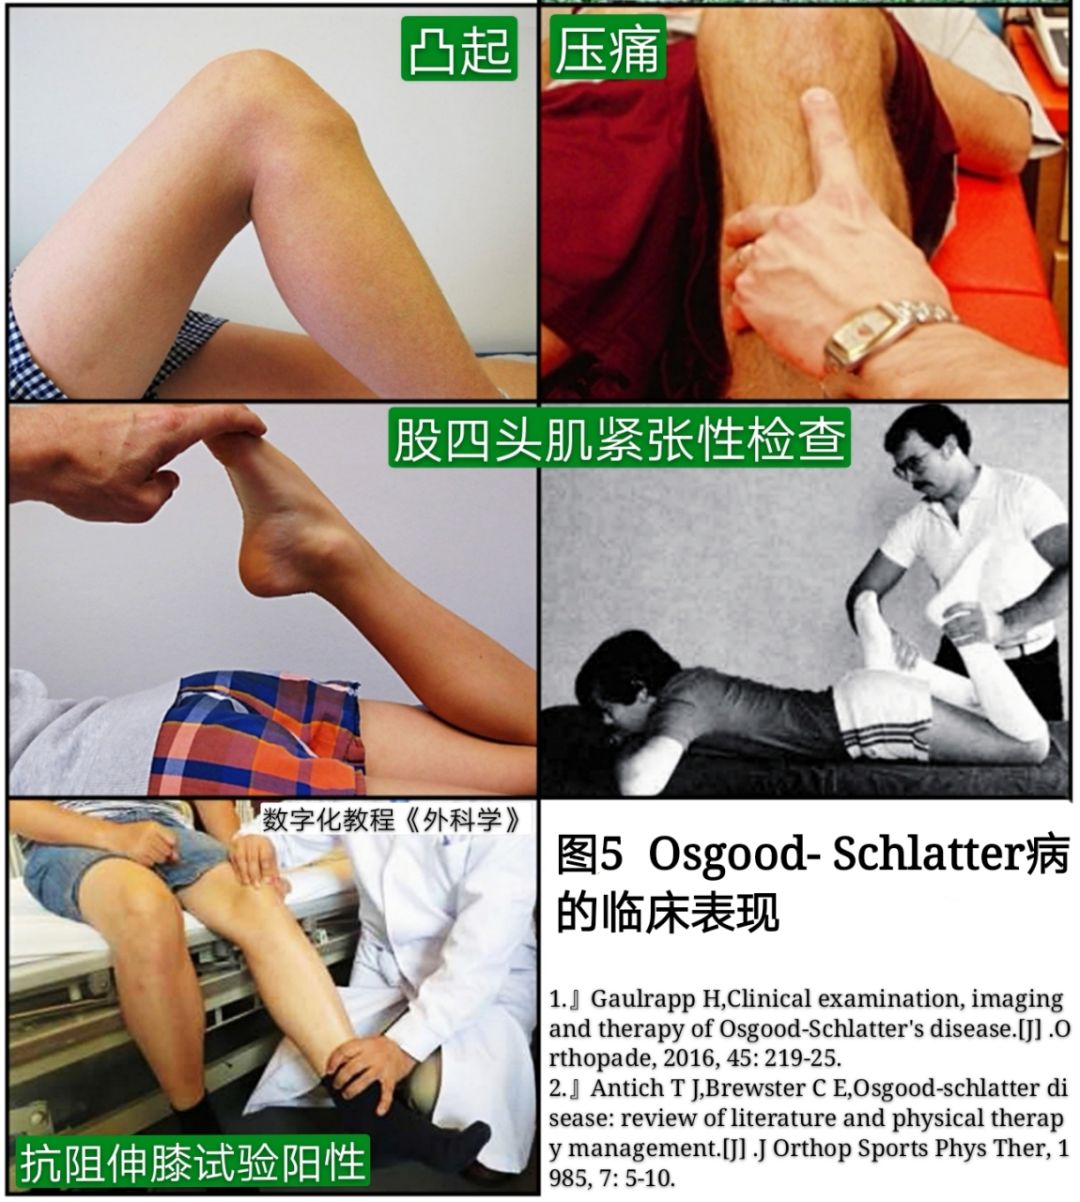 引起膝前痛的胫骨结节骨软骨炎，你会诊治吗?